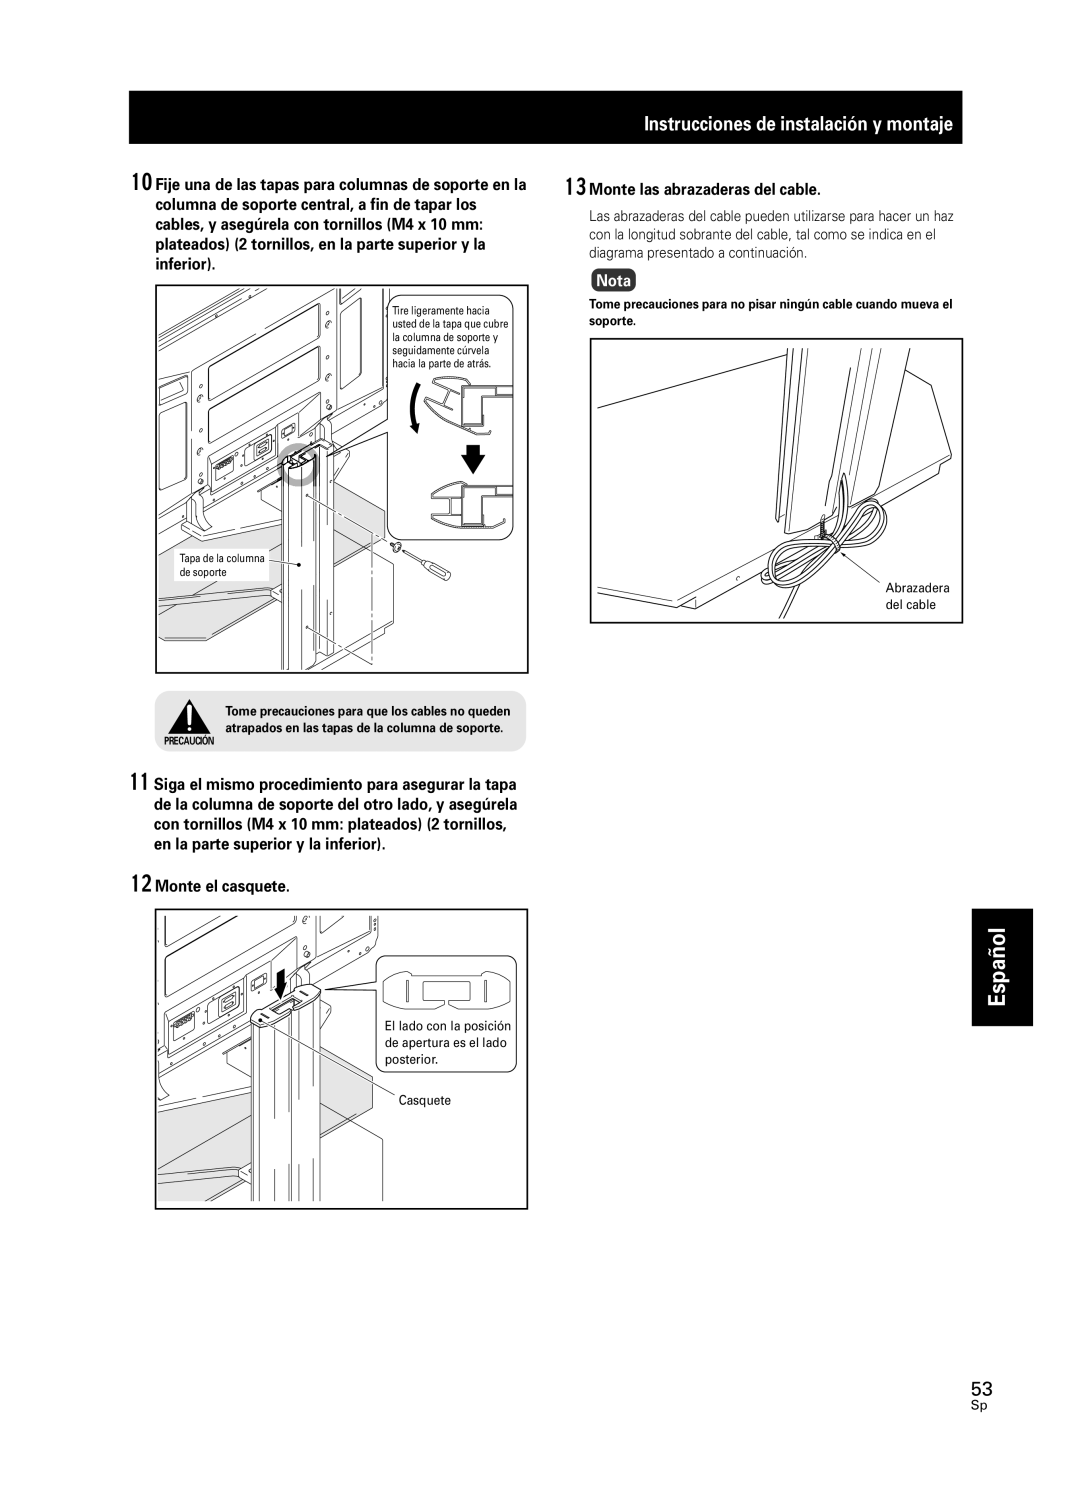 Pioneer PDK-FS05 manual Español, Instrucciones de instalación y montaje, Nota, Abrazadera, Tapa de la columna de soporte 